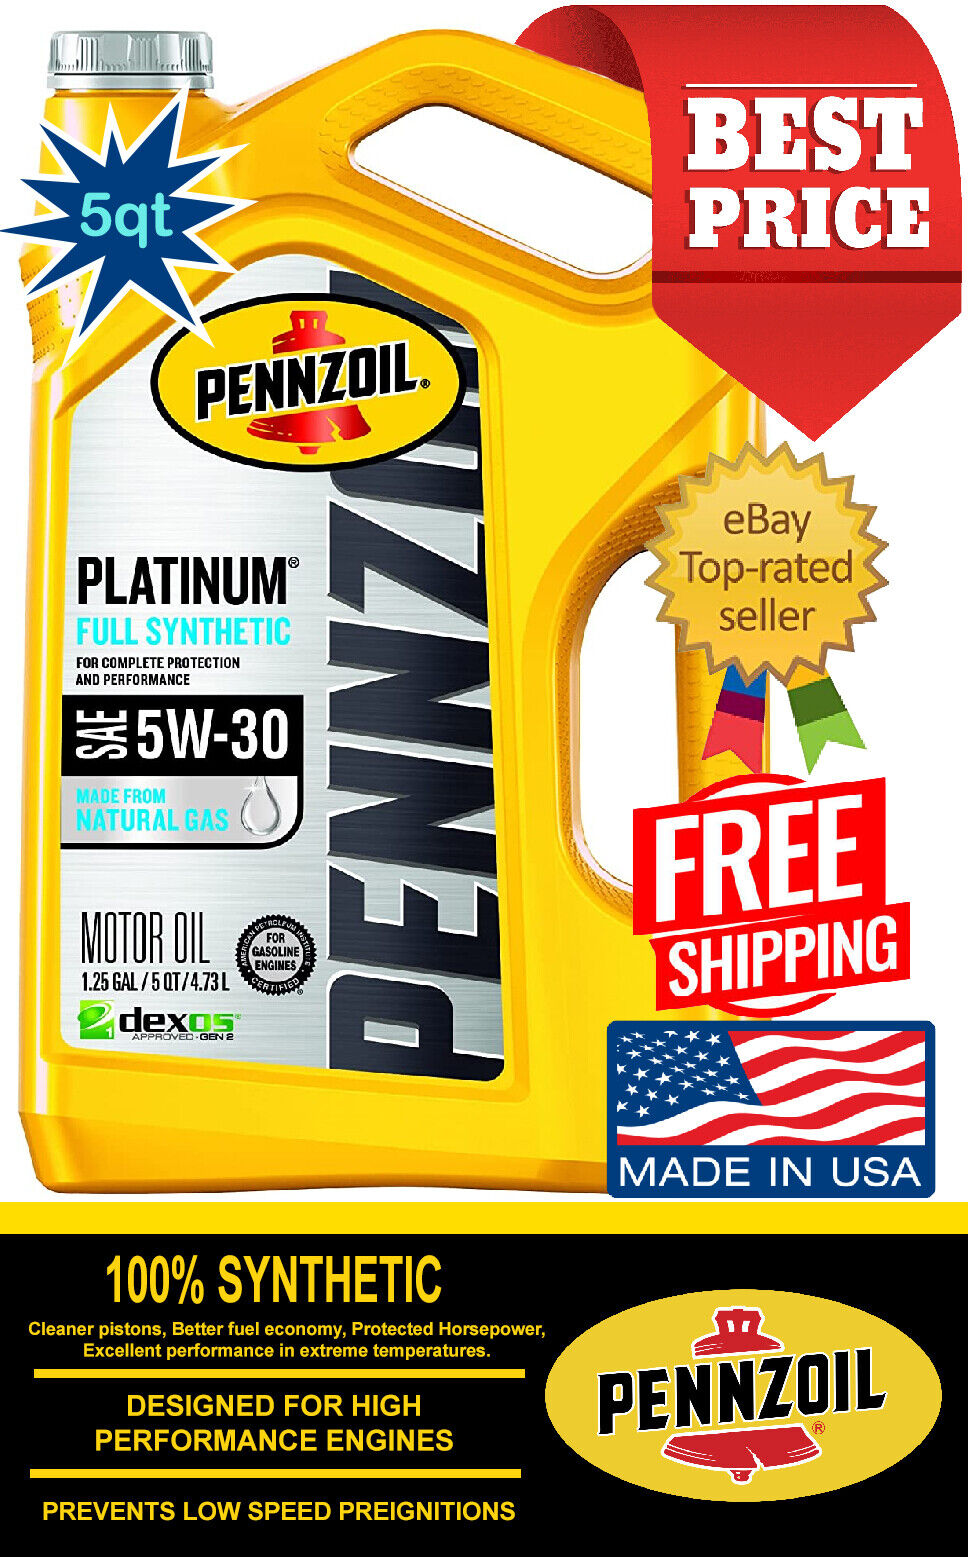 Pennzoil Platinum 5W-30 Full Synthetic Motor Oil, 5 Quart, 5w30 Oil, Free Ship!